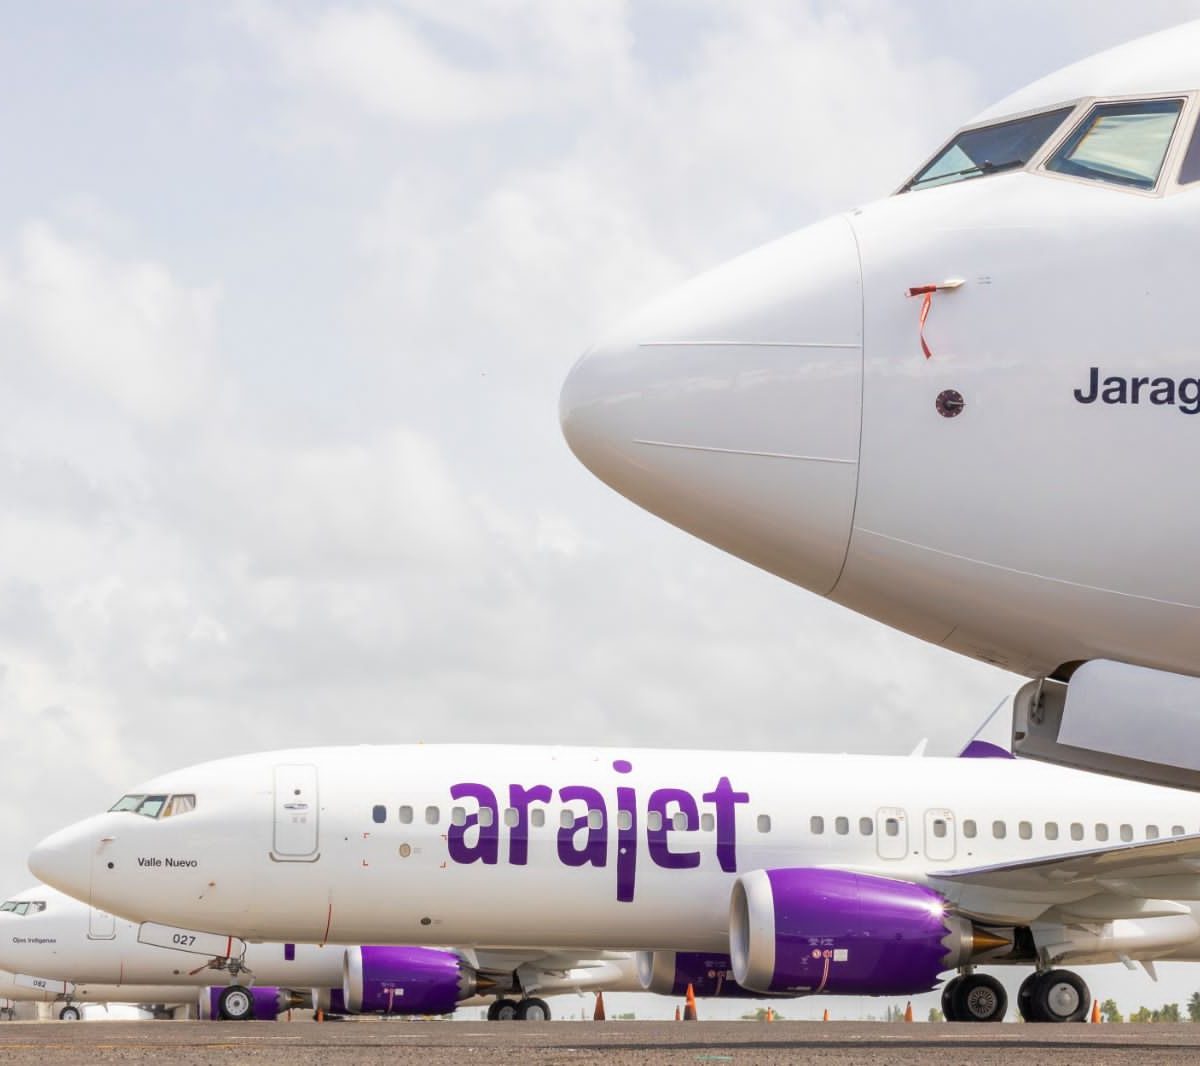 Arajet operará un vuelo desde Santiago a Bogotá para apoyar participación de RD en Anato 2023